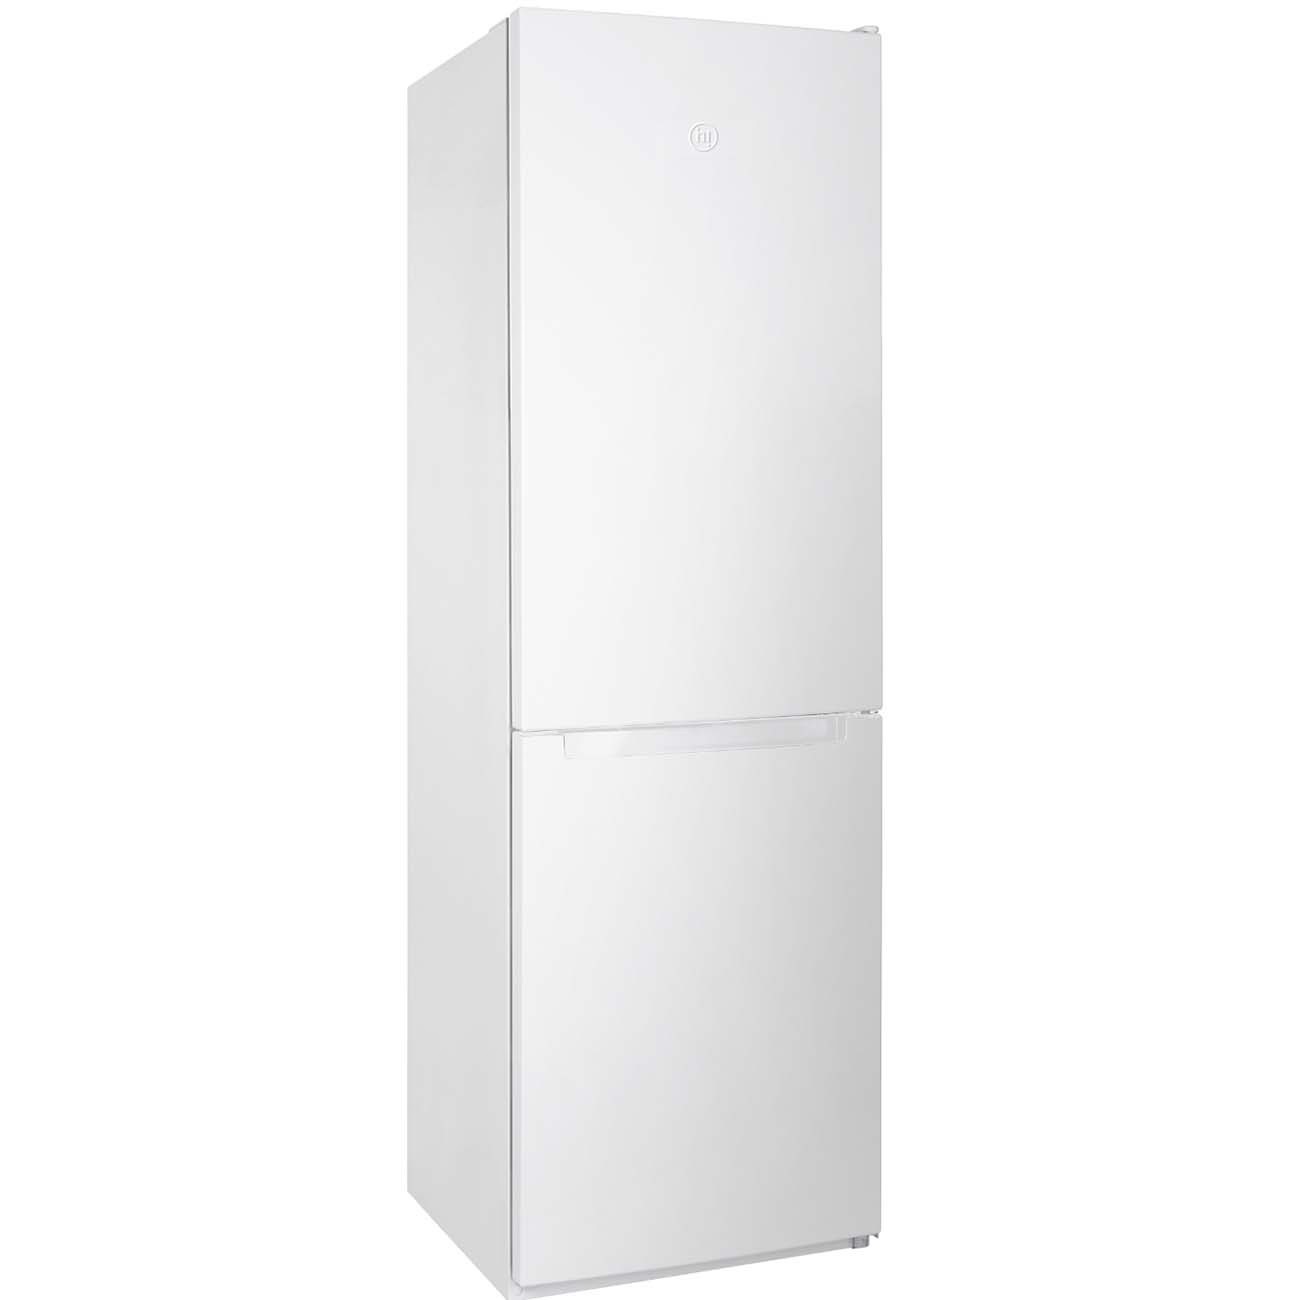 Холодильник Hi HFDN018857DW белый